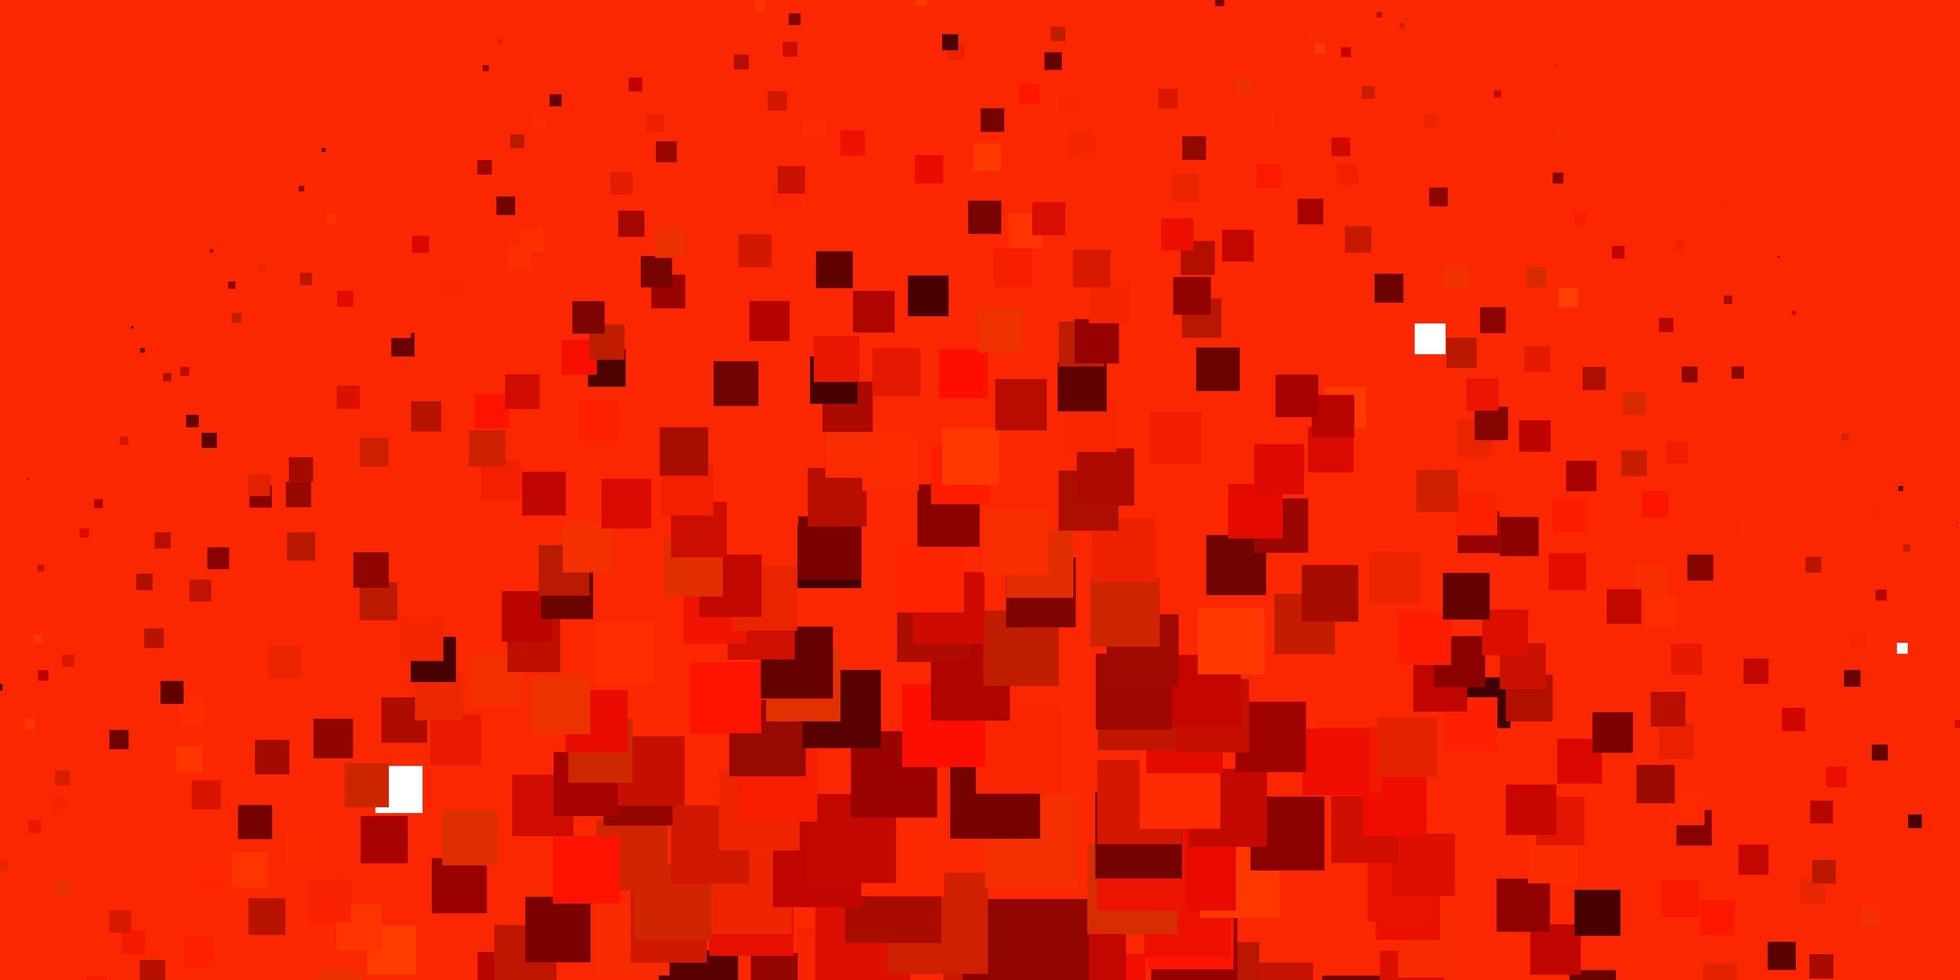 Fondo de vector rojo claro en estilo poligonal Ilustración de degradado abstracto con patrón de rectángulos de colores para páginas de destino de sitios web